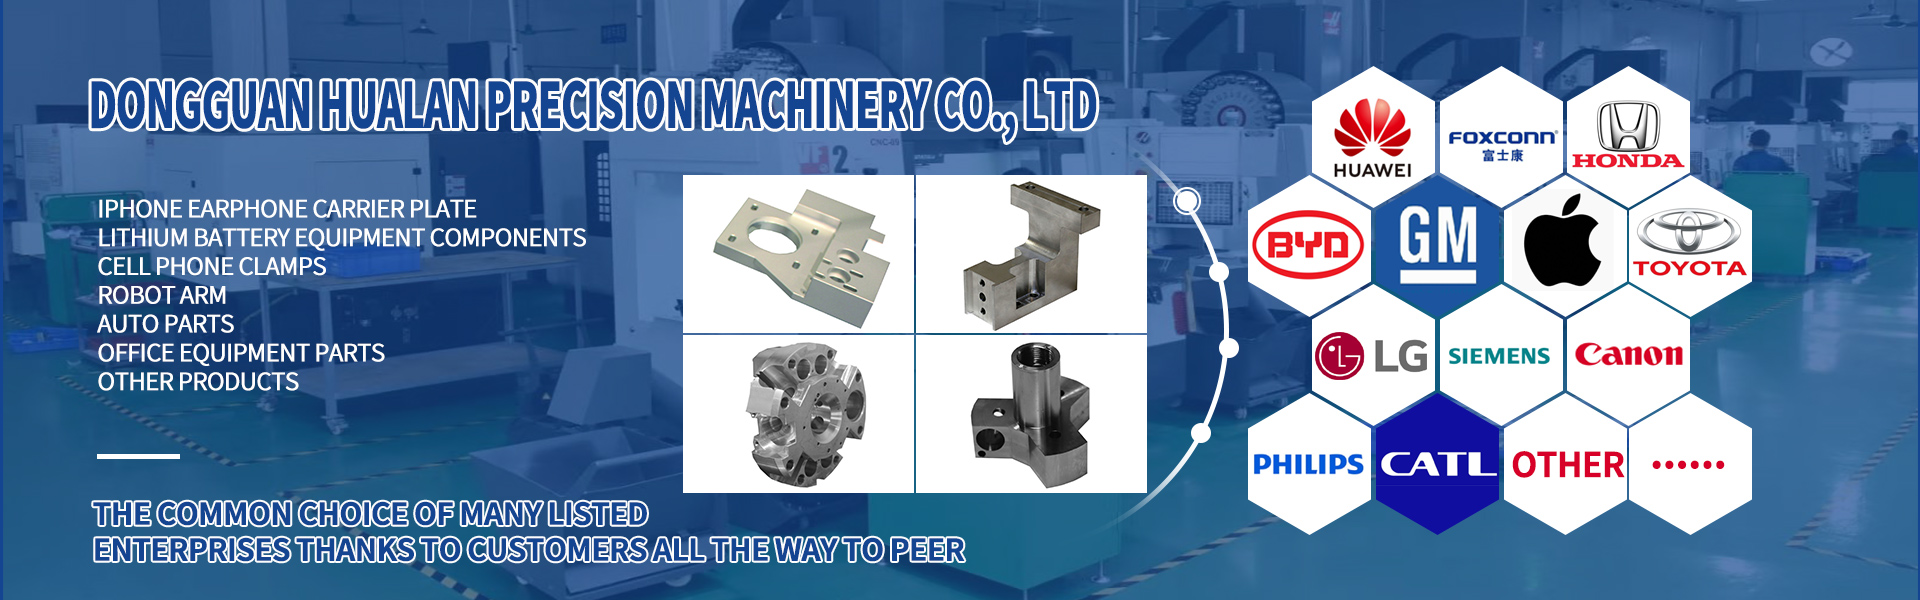 Peças de usinagem CNC, Turing e Milling, corte de linha,Dongguan Hualan Precision Machinery Co., LTD